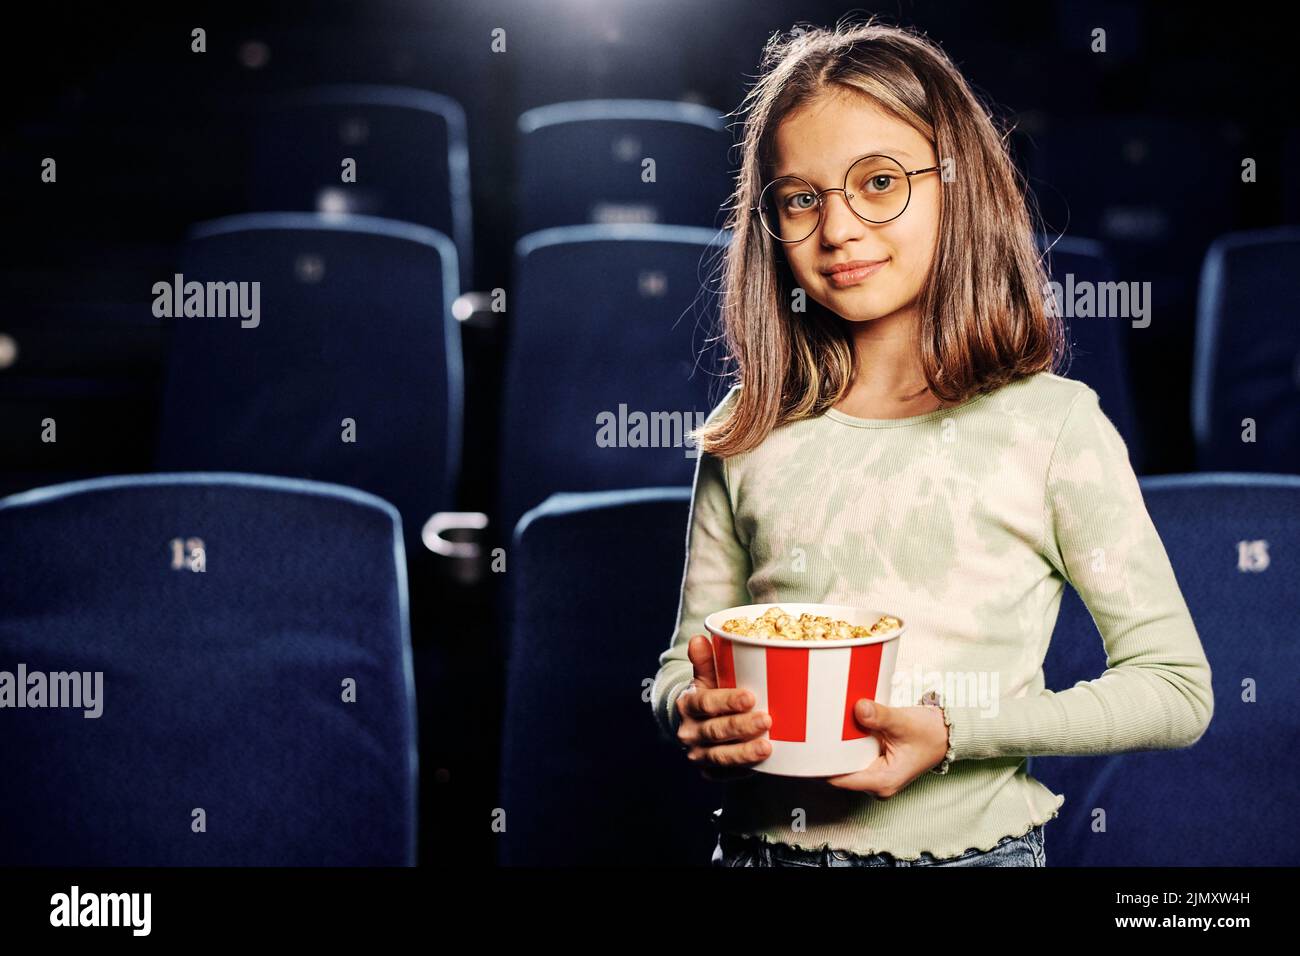 Retrato horizontal medio de una hermosa niña caucásica preadolescente sosteniendo un cubo de palomitas de maíz en el salón del cine contra los asientos azul marino Foto de stock